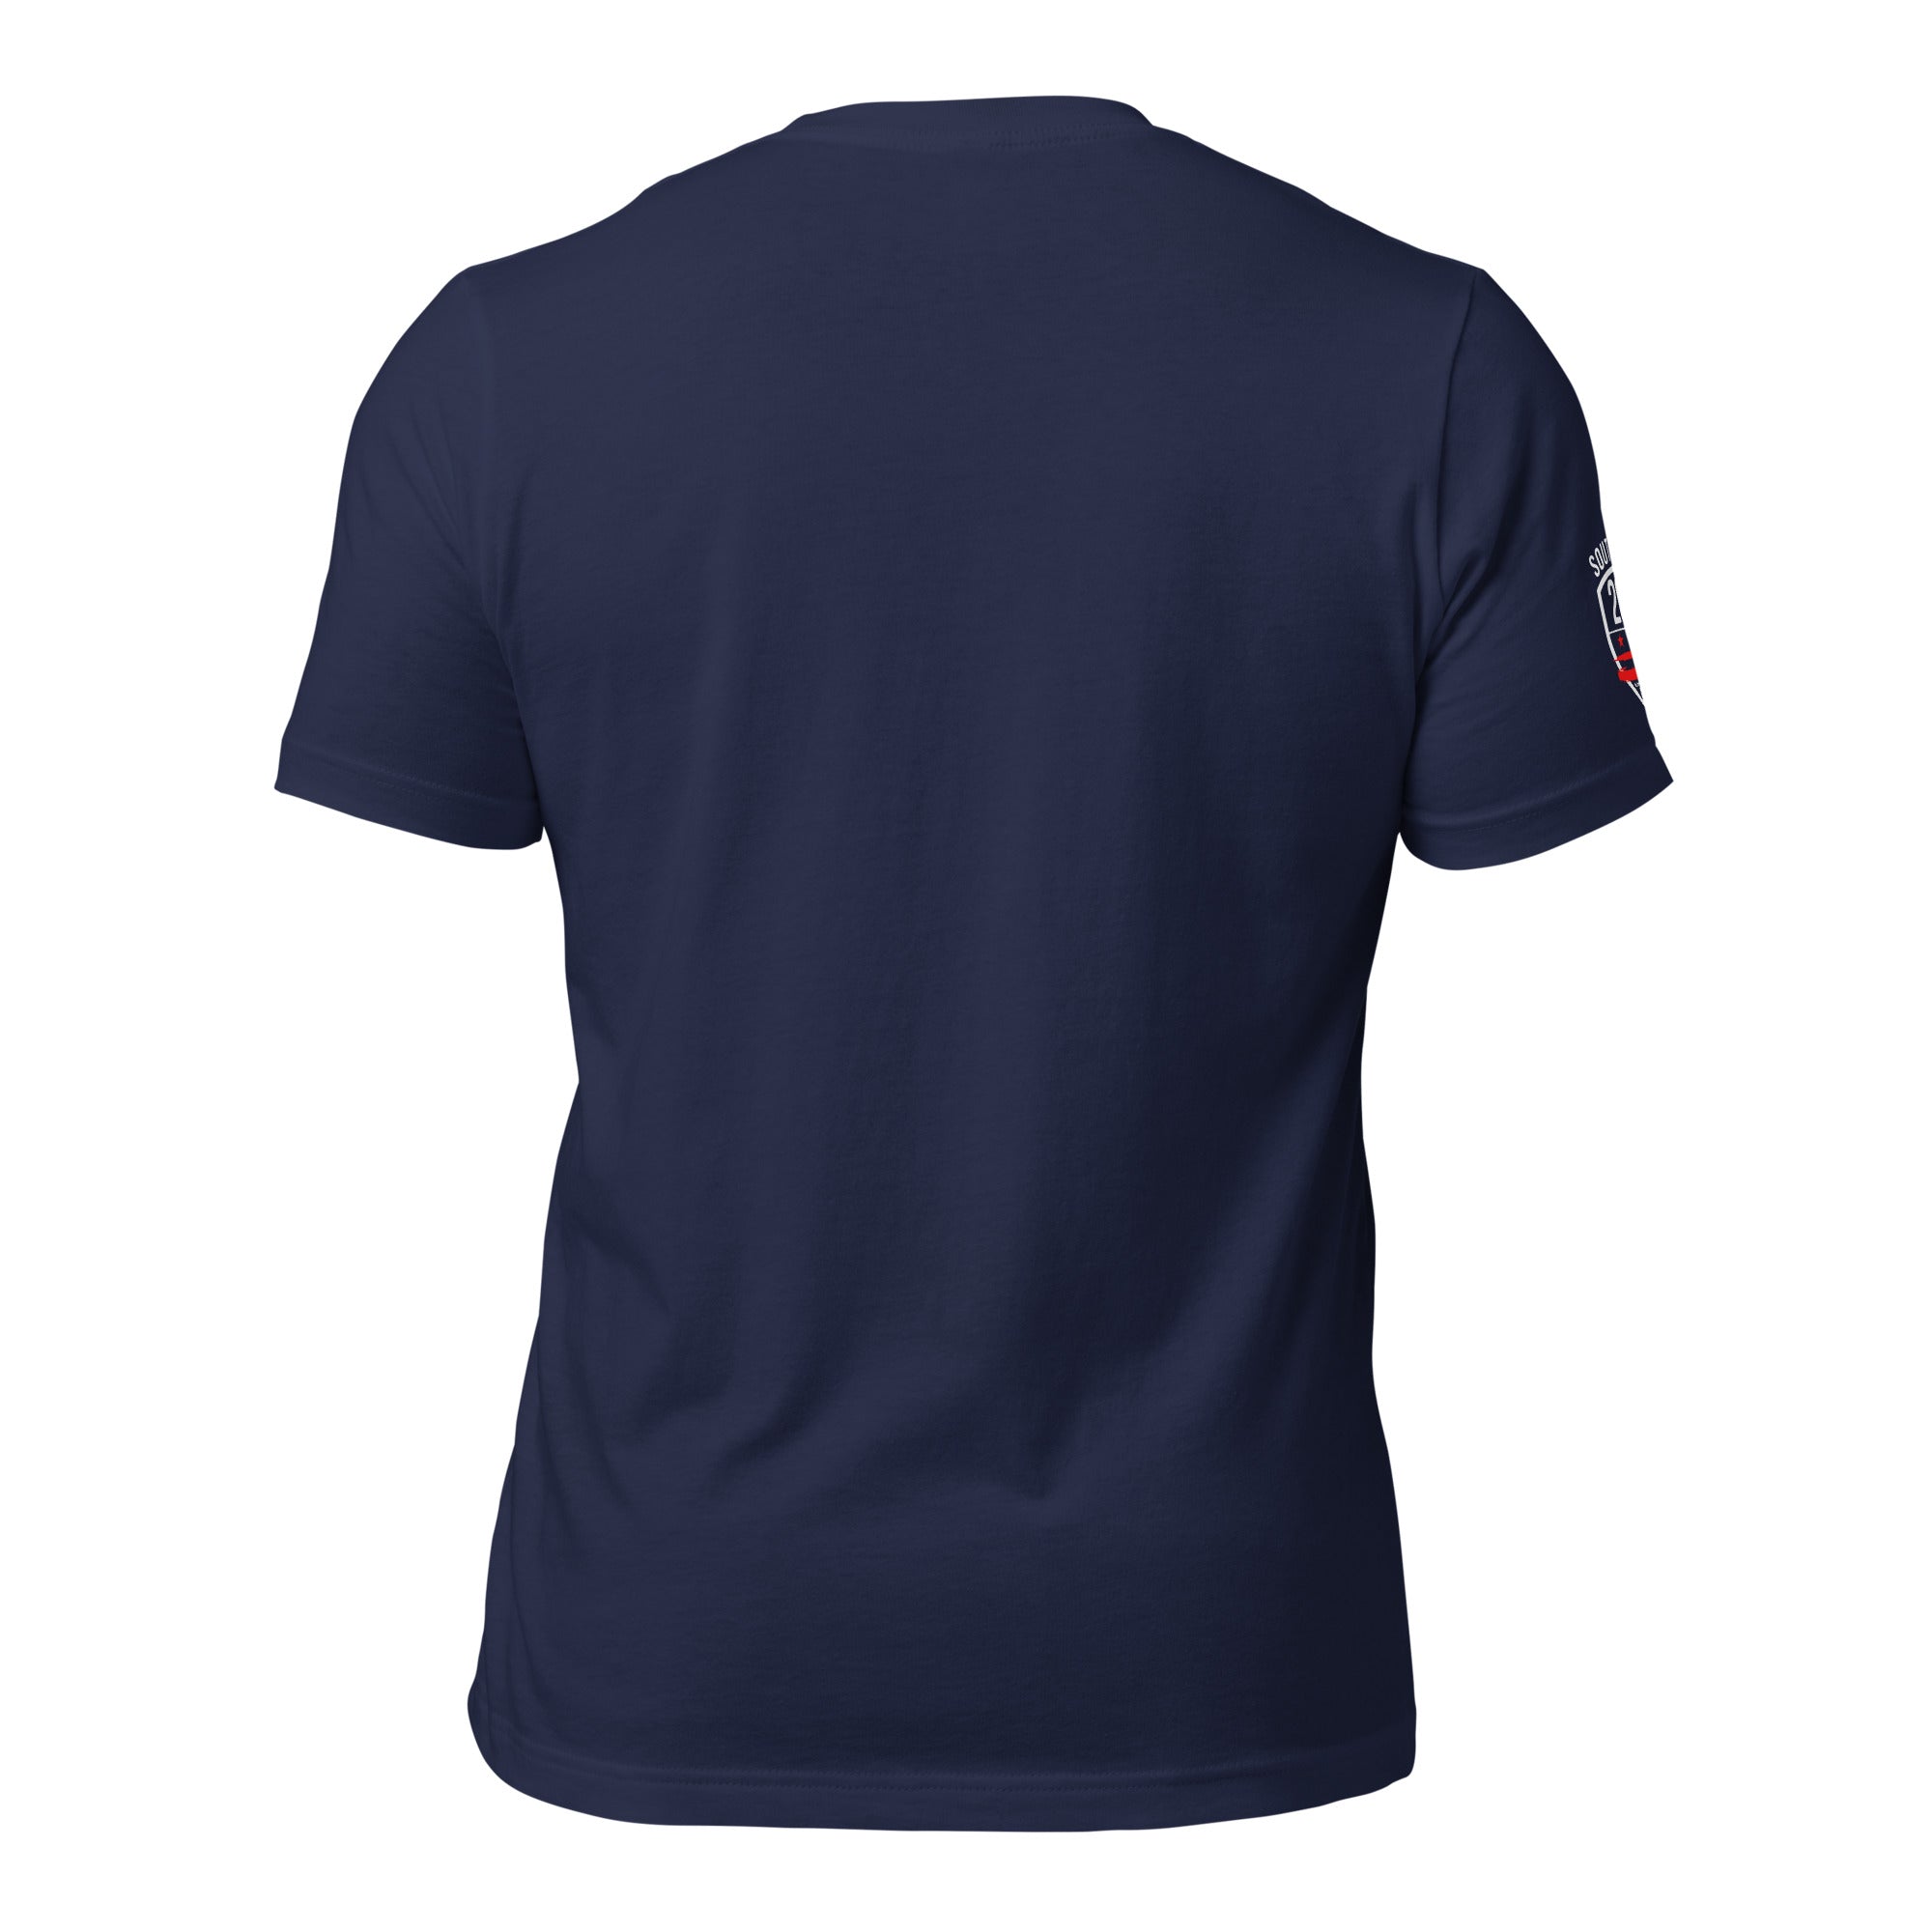 'Marion Barry Avenue SEDC' -Cotton Unisex T-shirt